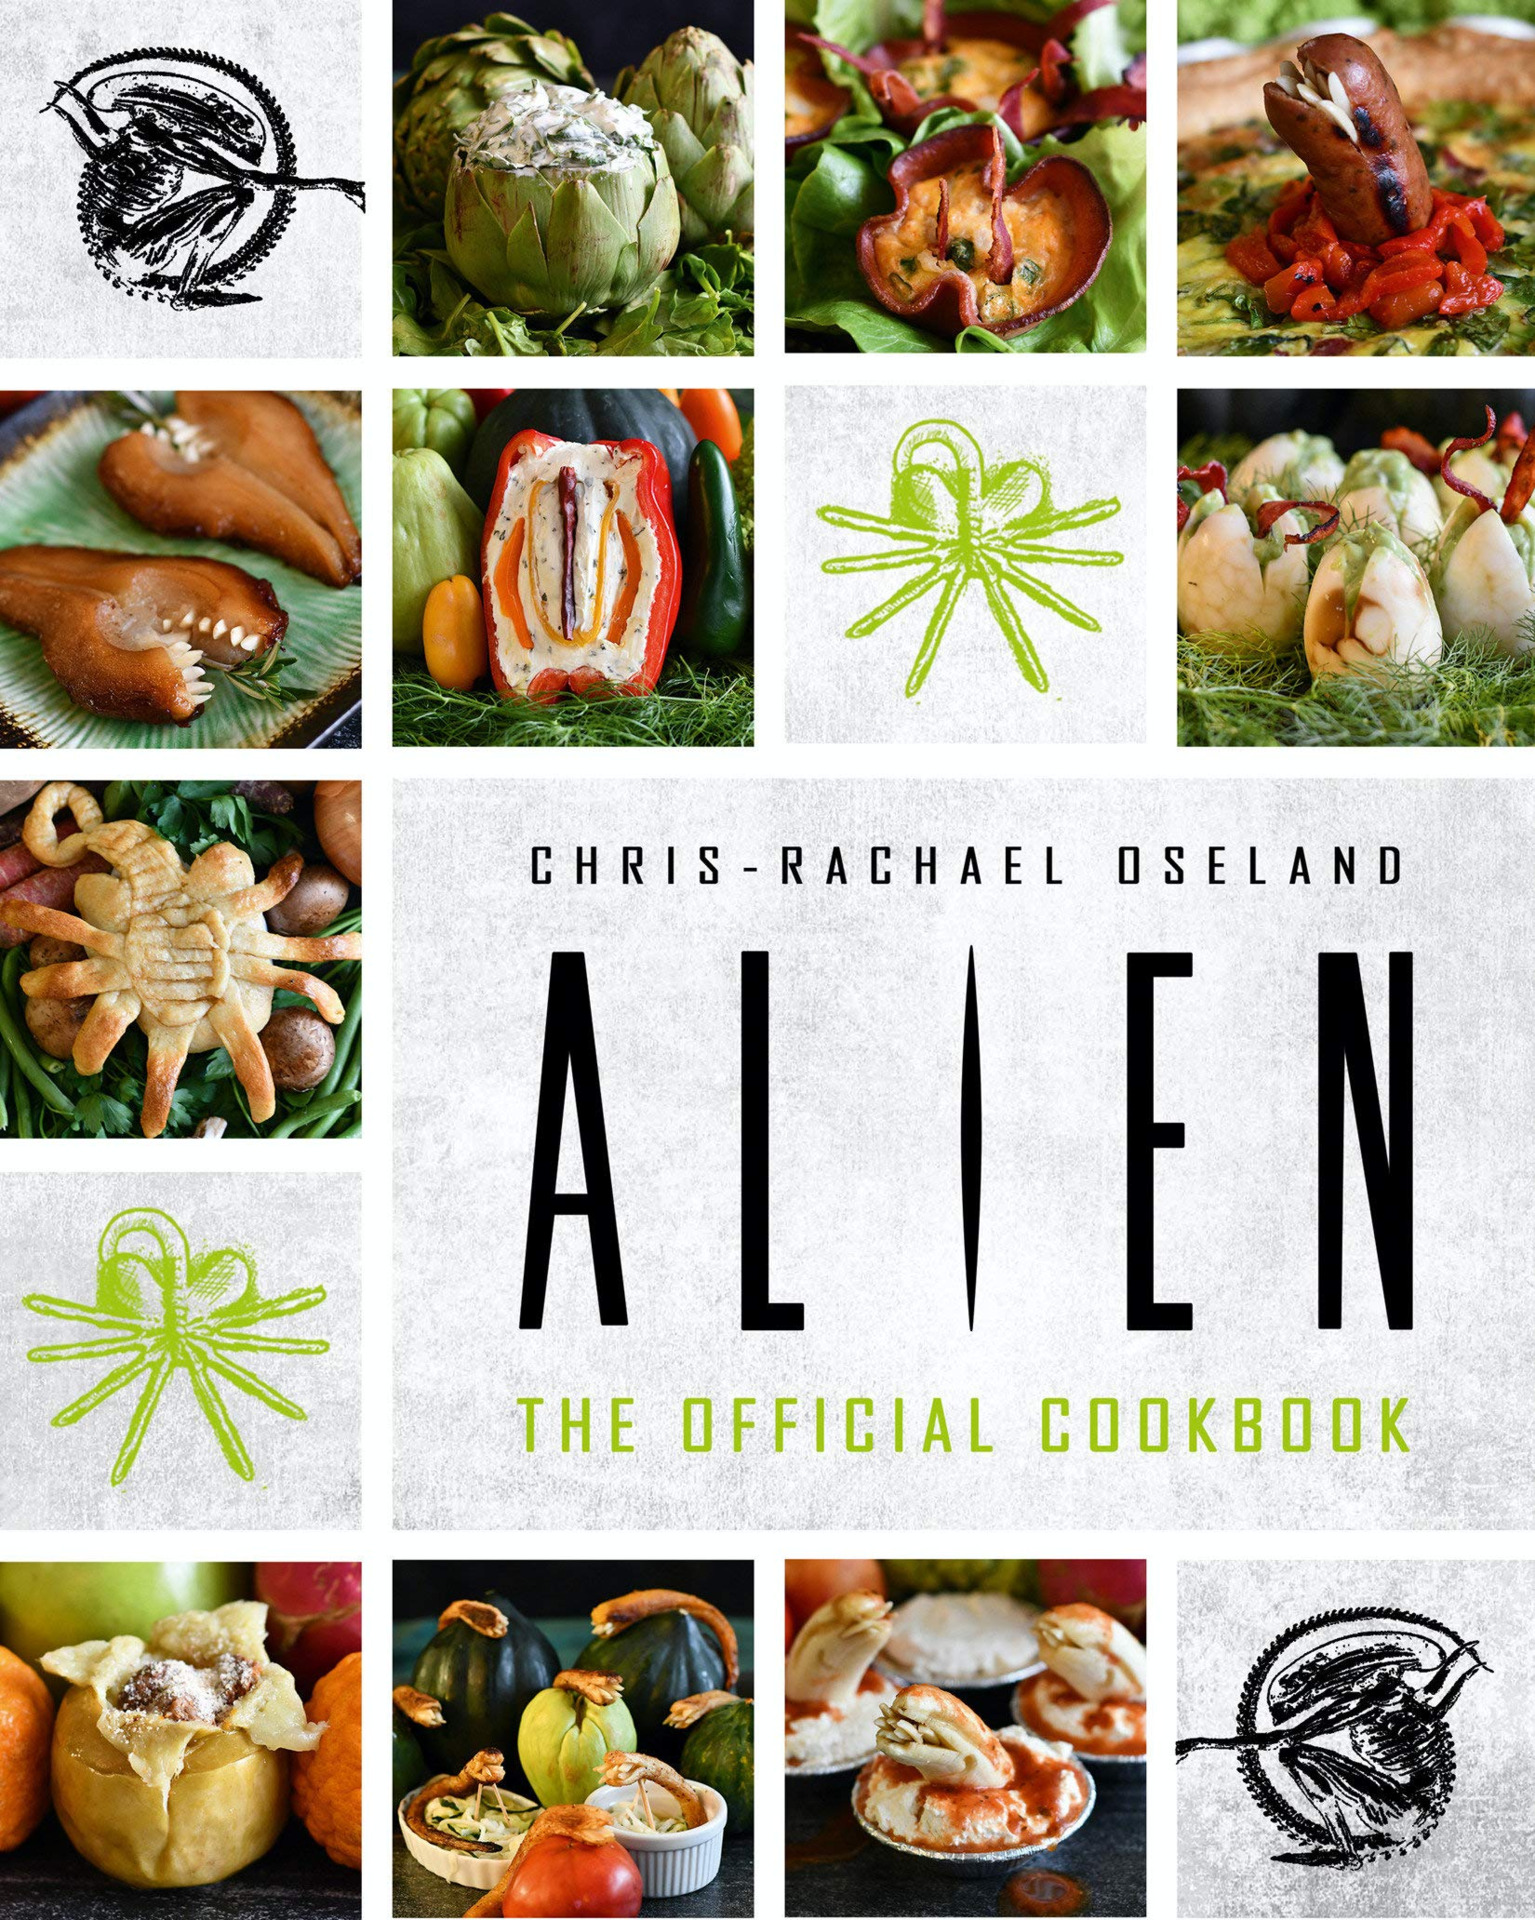 Kuchárka Alien: The Official Cookbook